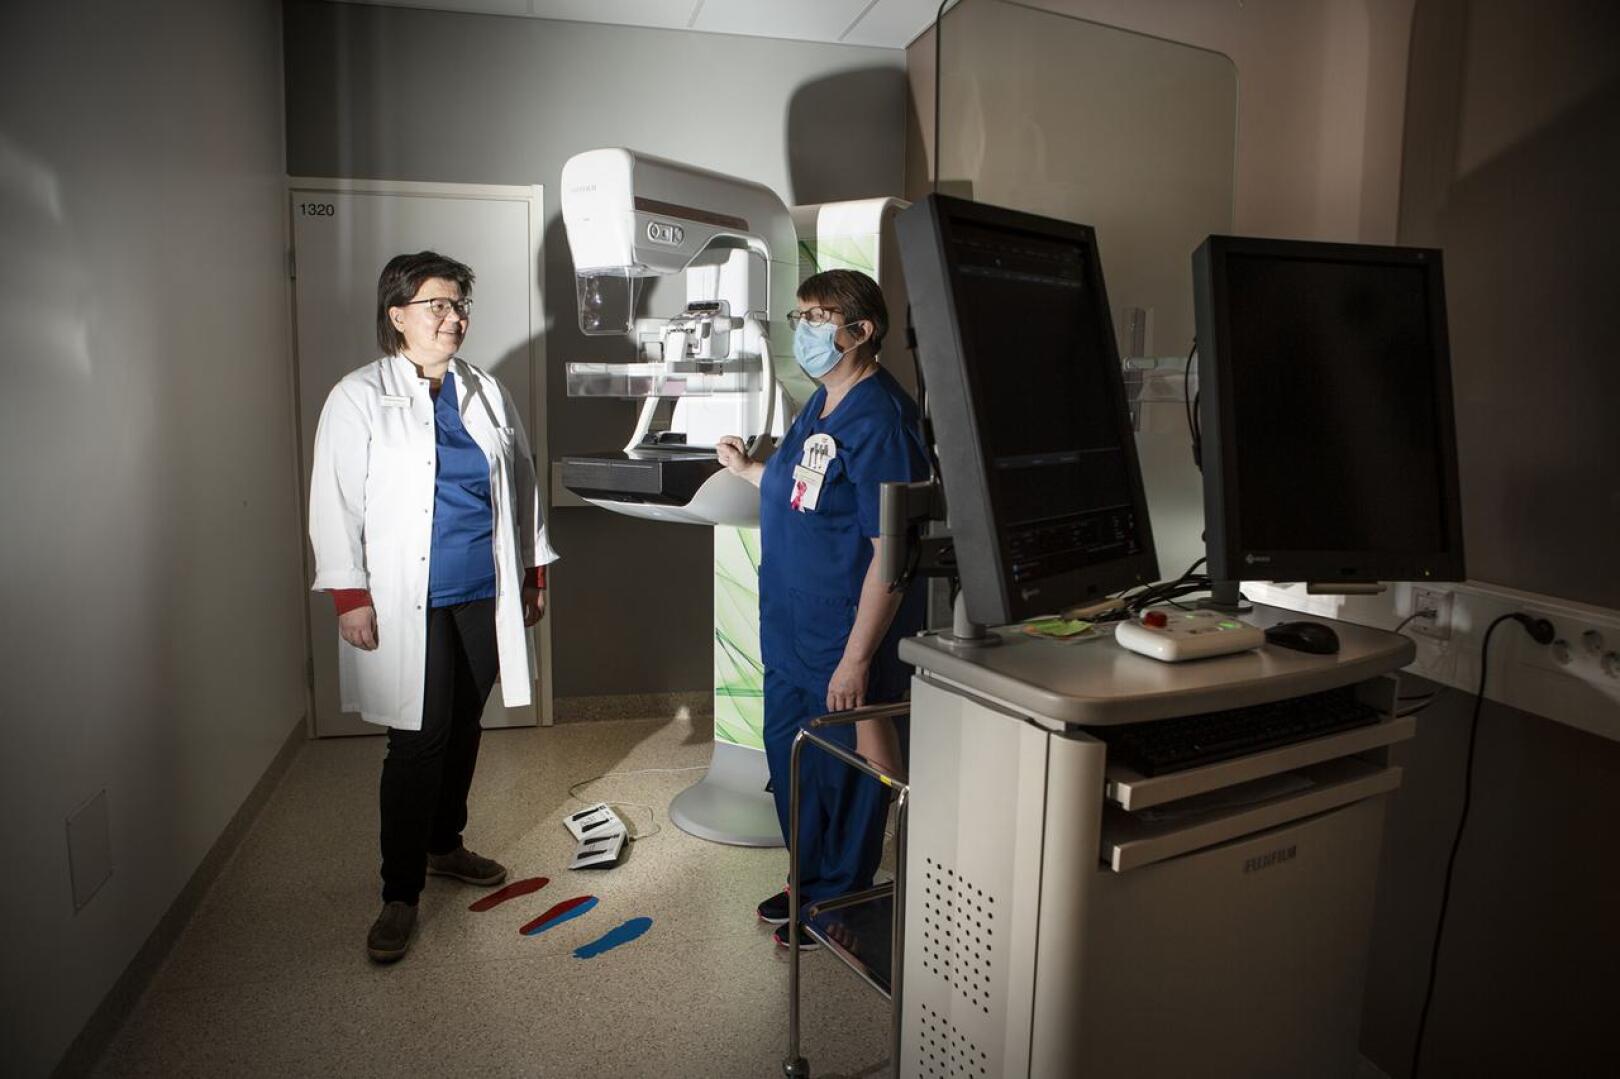 Ylivieskan terveyskeskuksen röntgeniin on keskitetty Kallion kuntien rintasyöpäseulonnat. Myös jatkotutkimukset tehdään samassa paikassa, kertovat röntgenlääkäri Sari Juntunen (vas.) ja osastonhoitaja Sari Koskela.